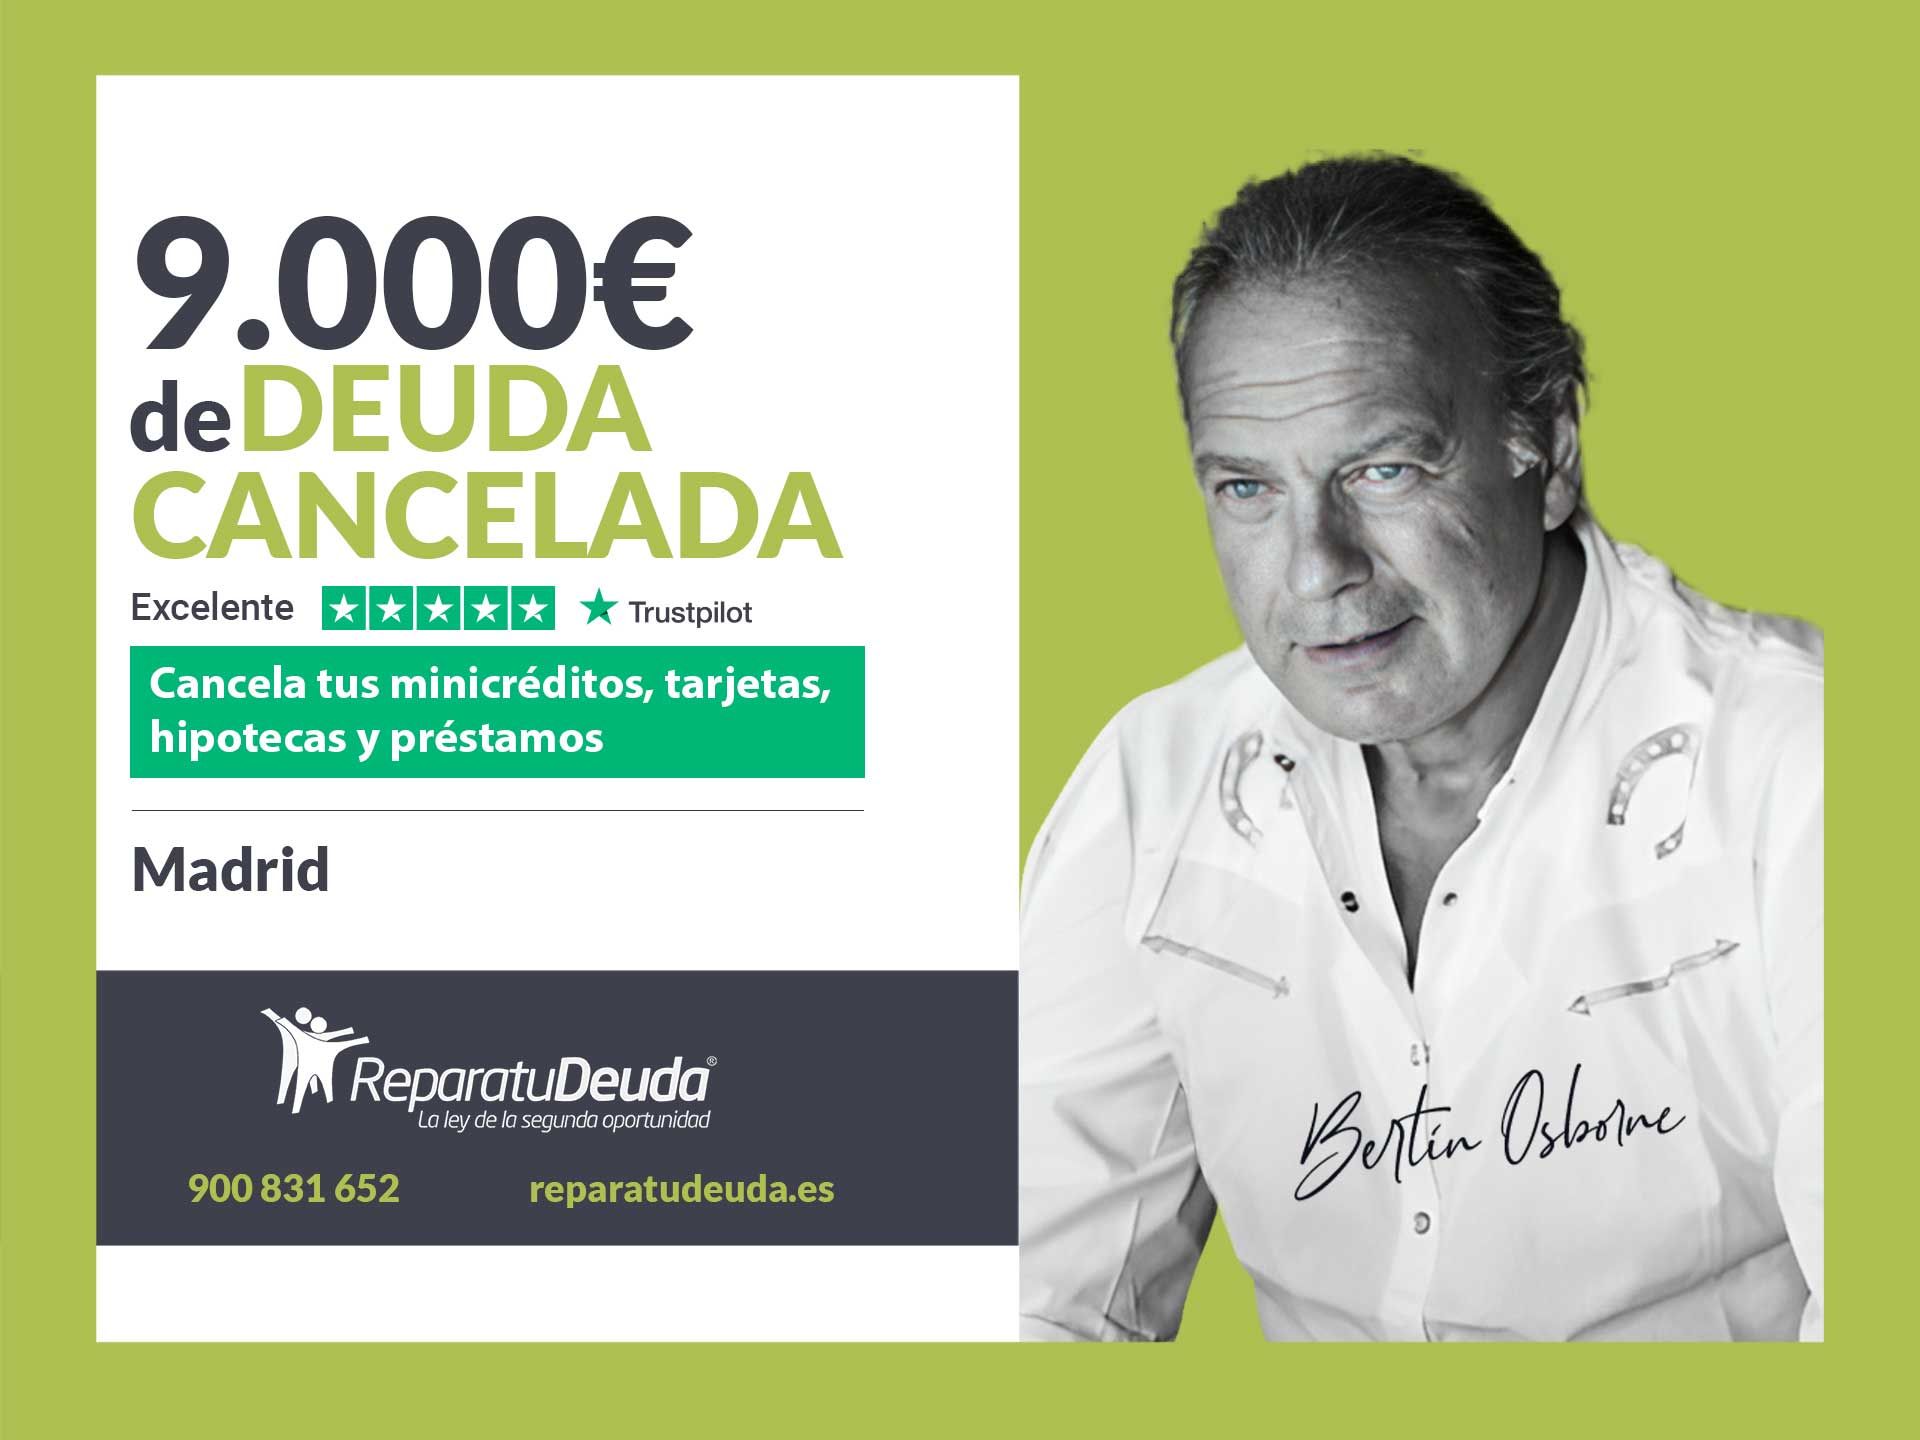 Repara tu Deuda Abogados cancela 9.000? en Madrid con la Ley de la Segunda Oportunidad